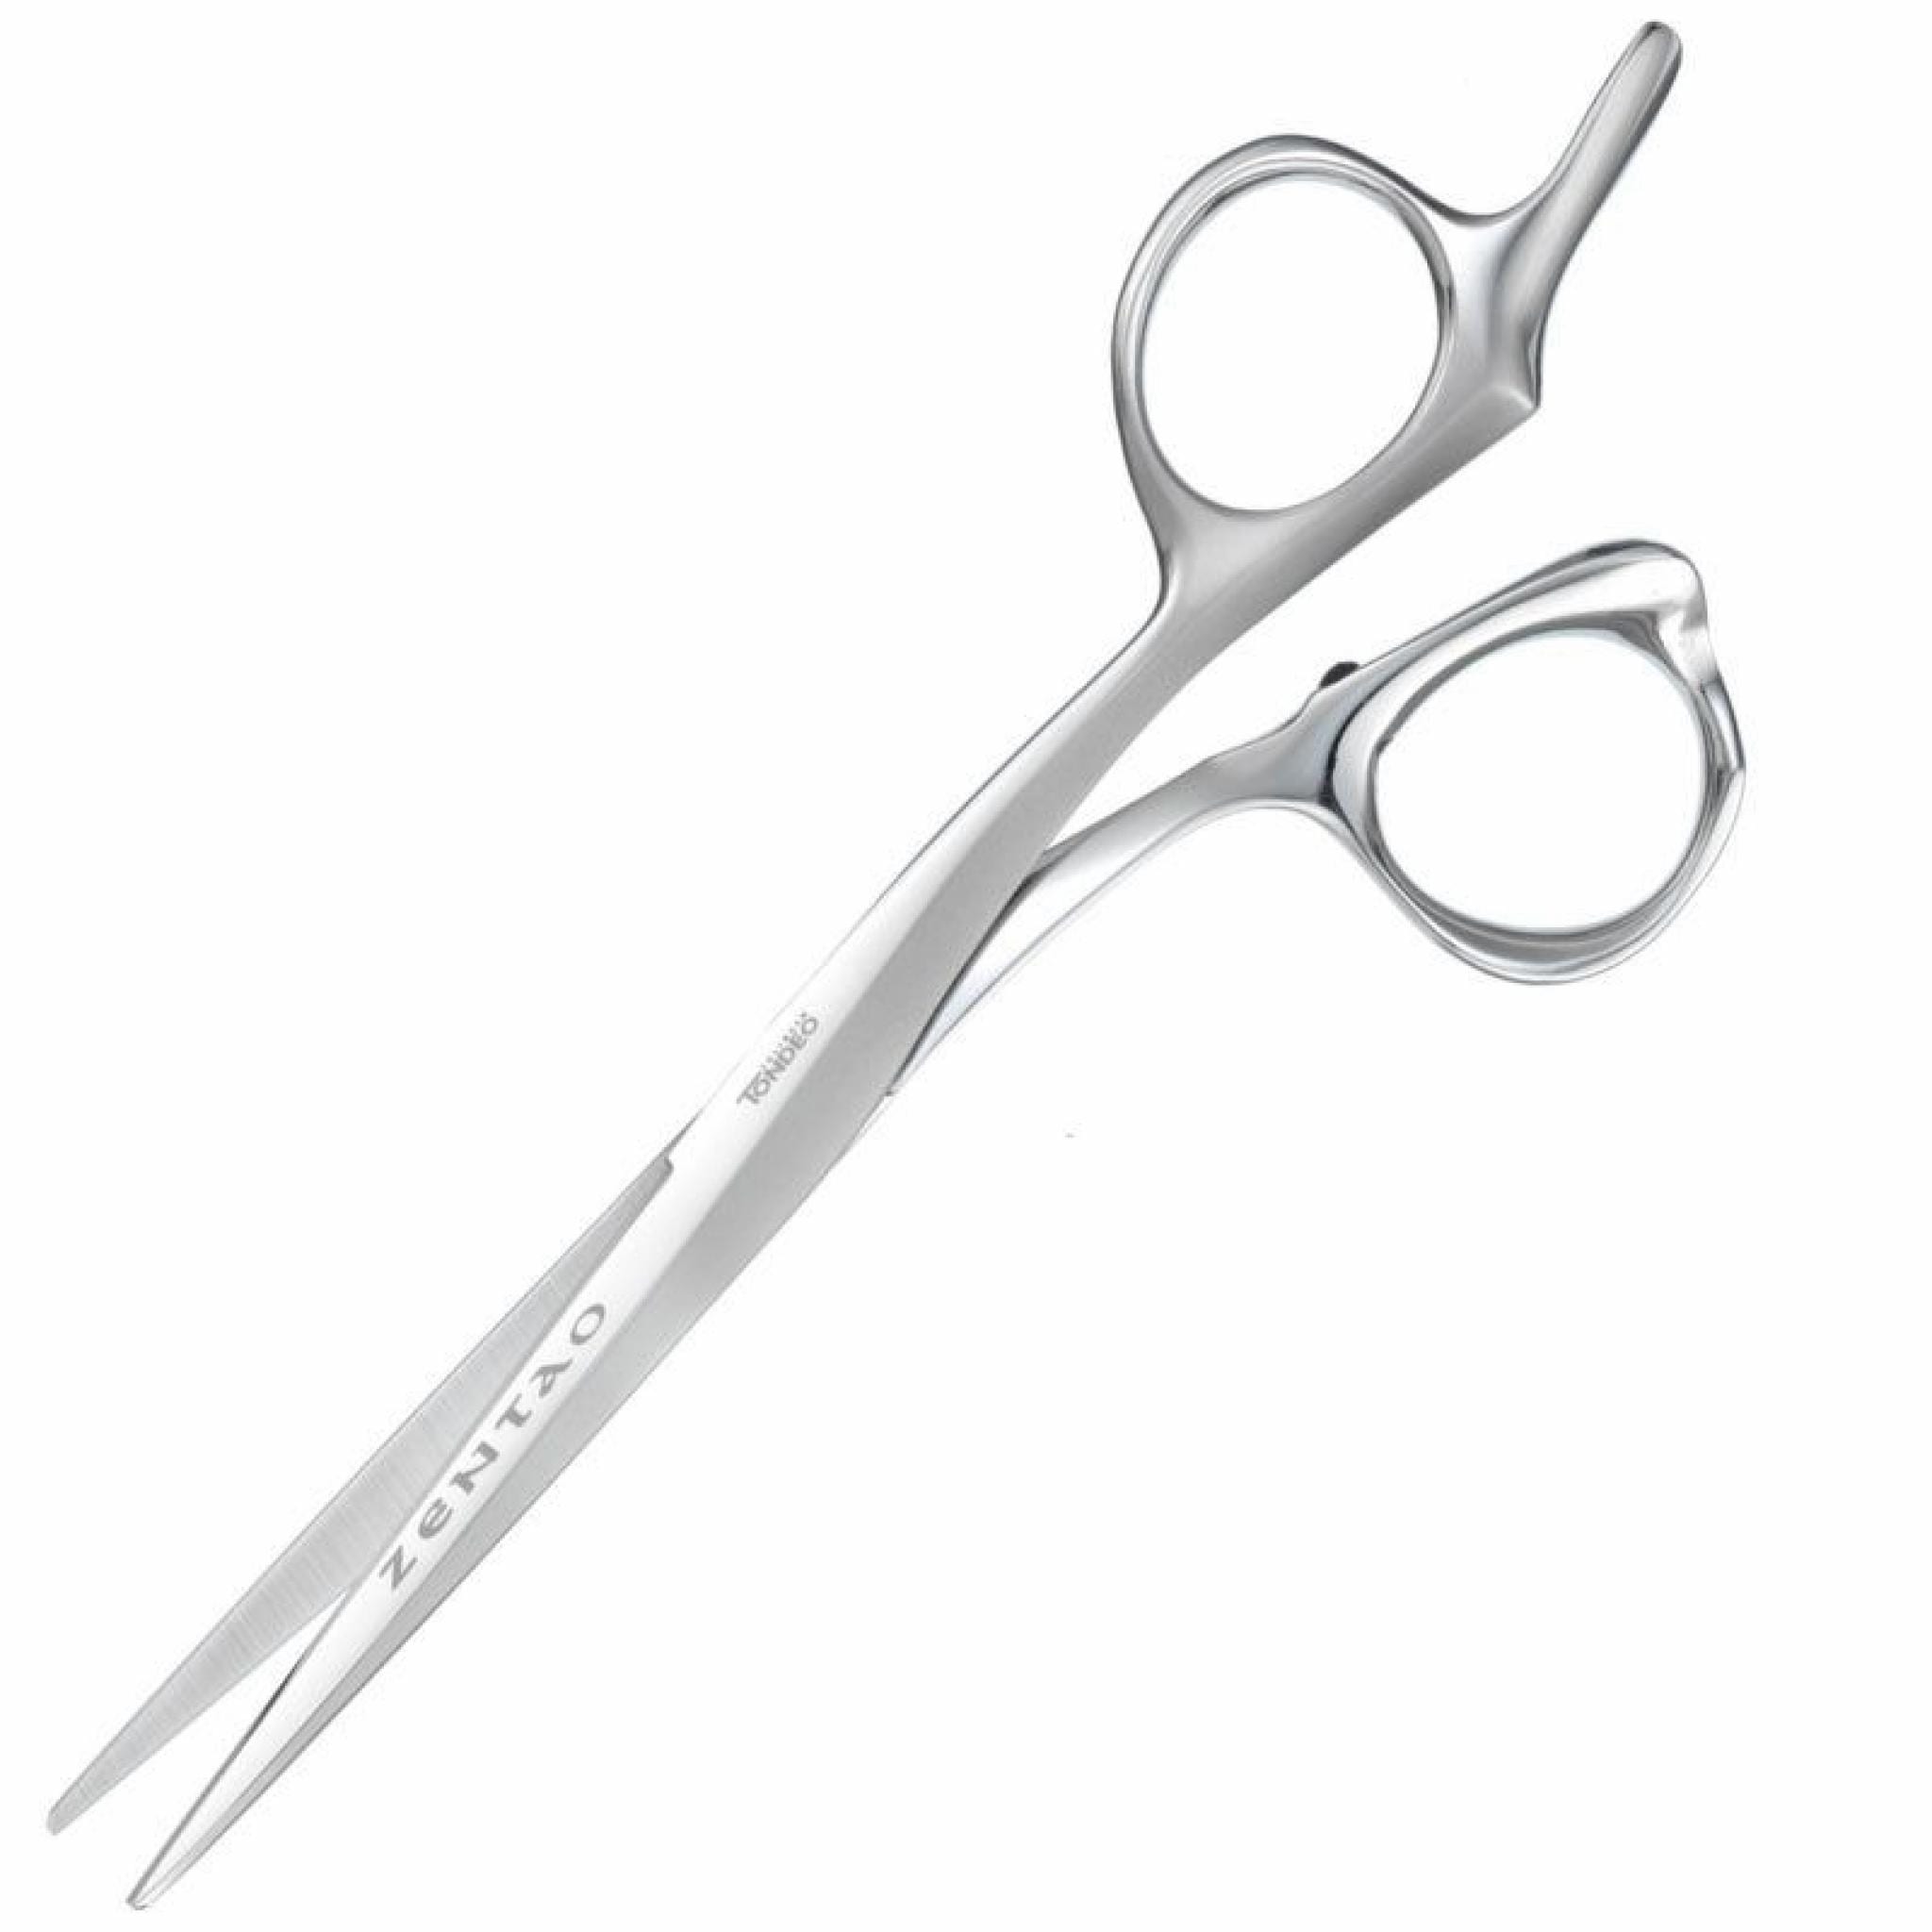 Zentao Hairdressing Scissor